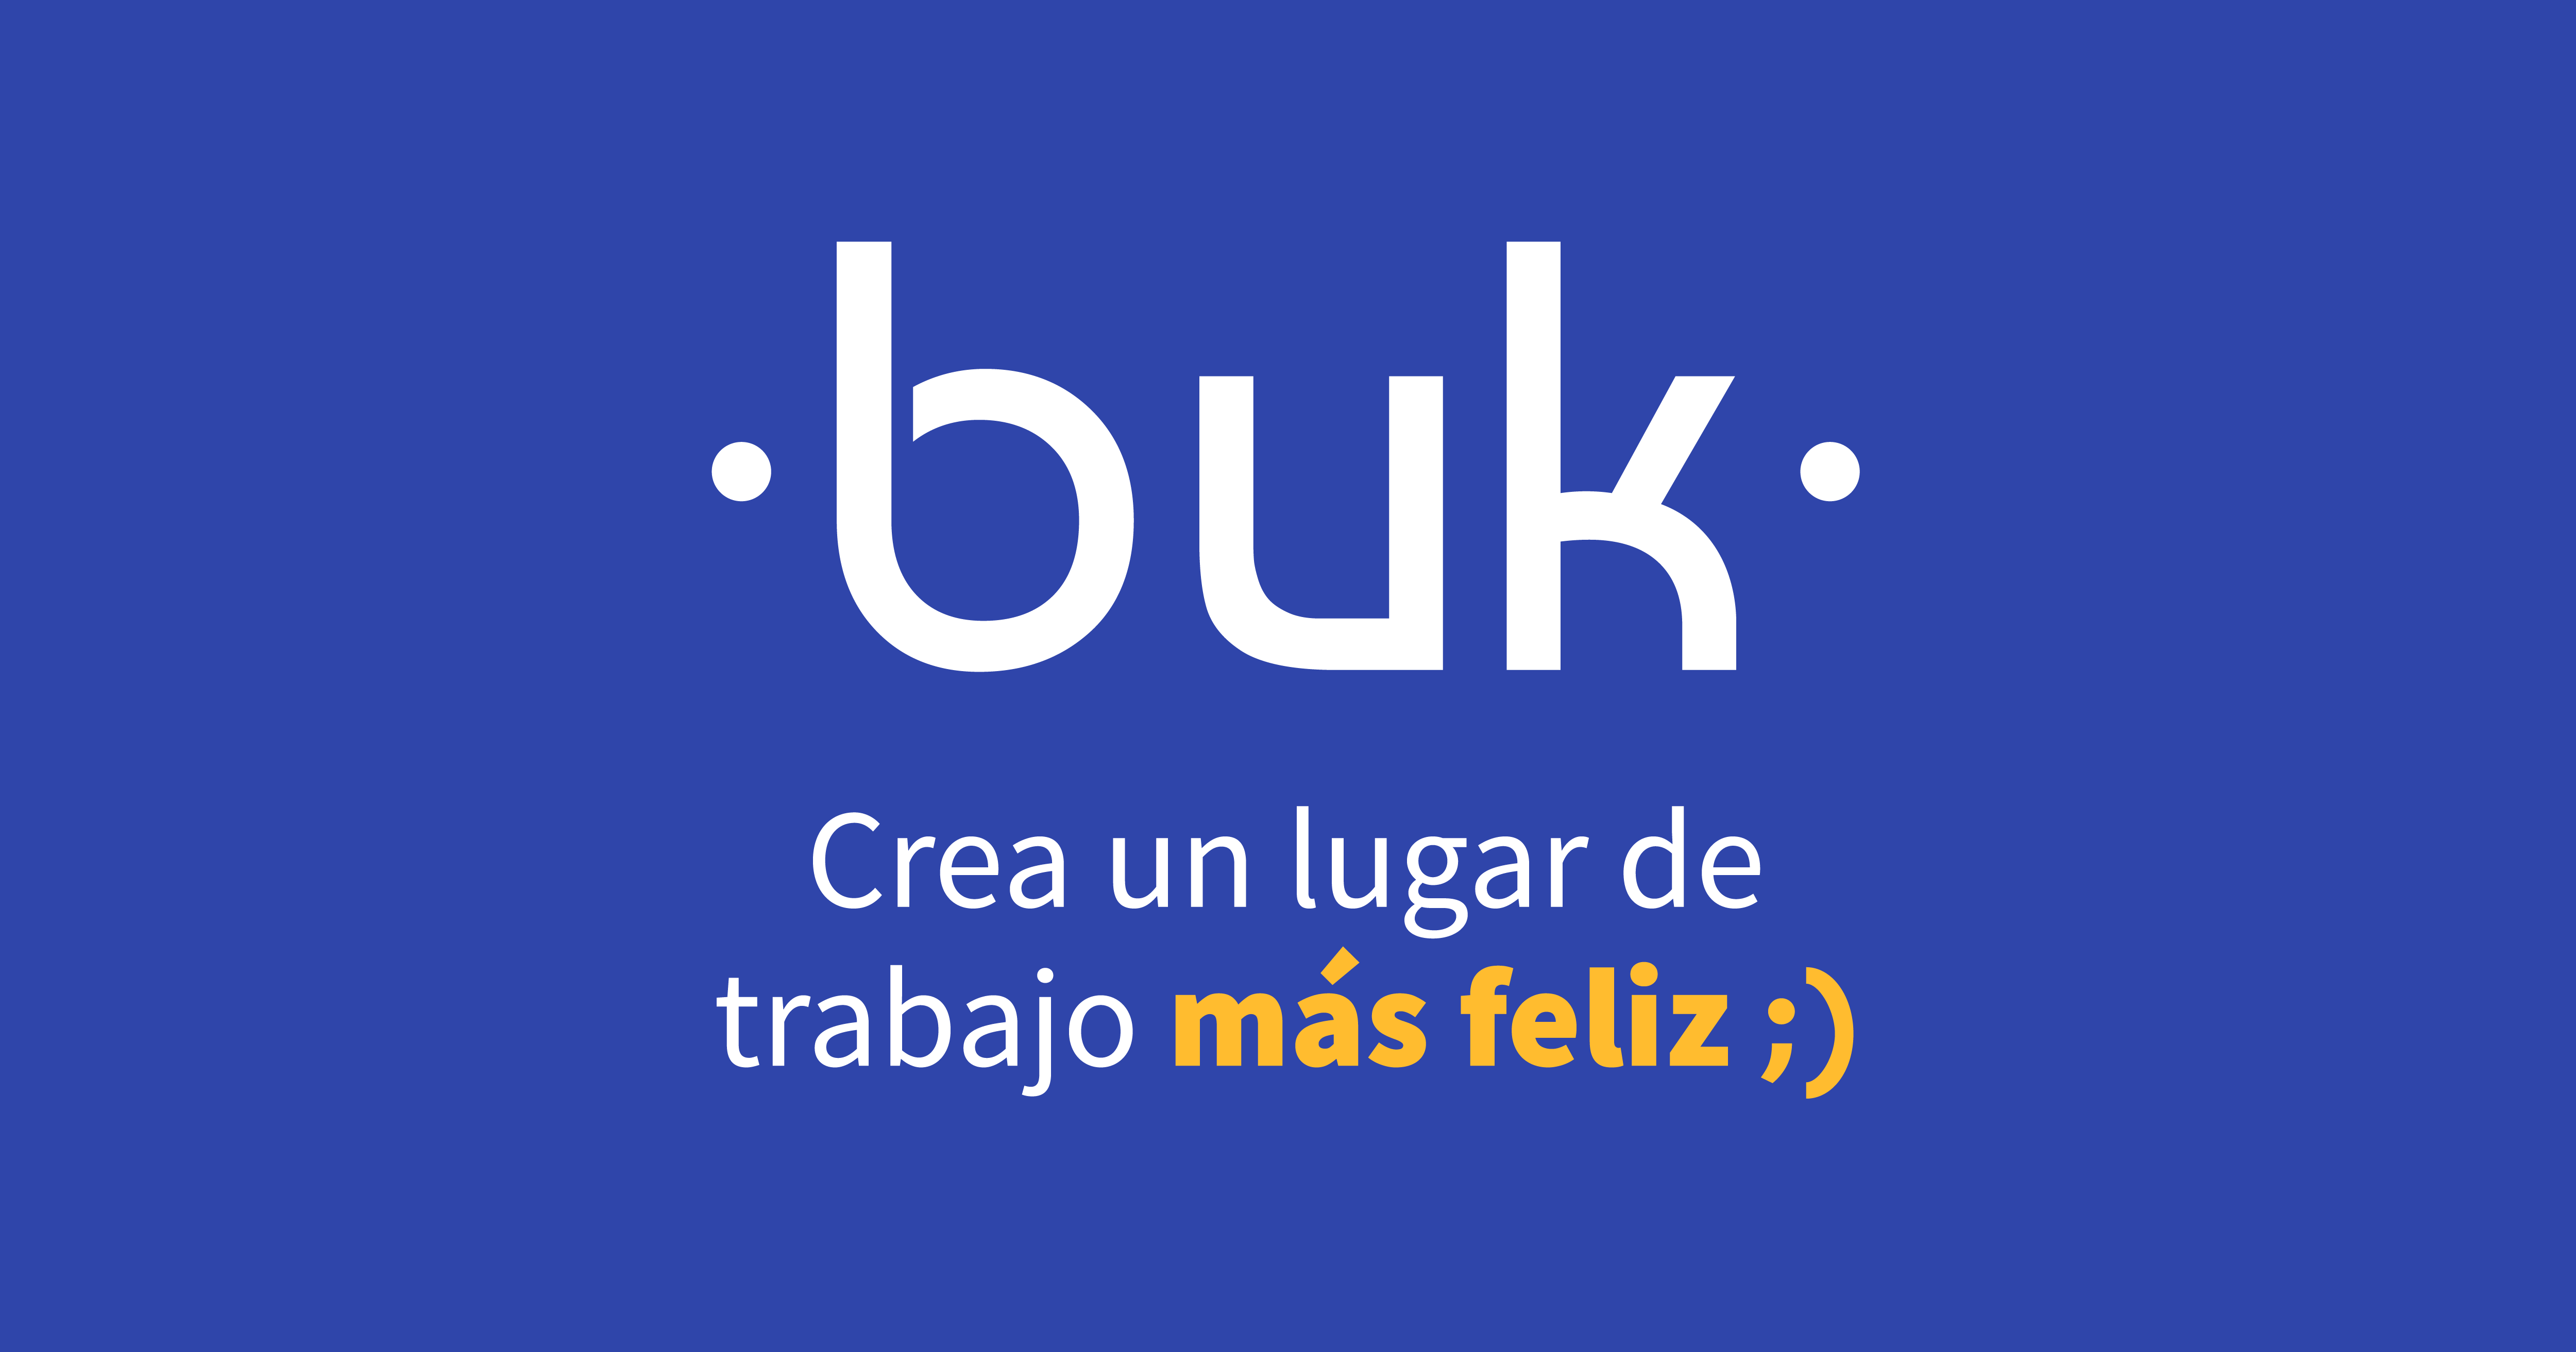 (c) Comunidad-buk.com